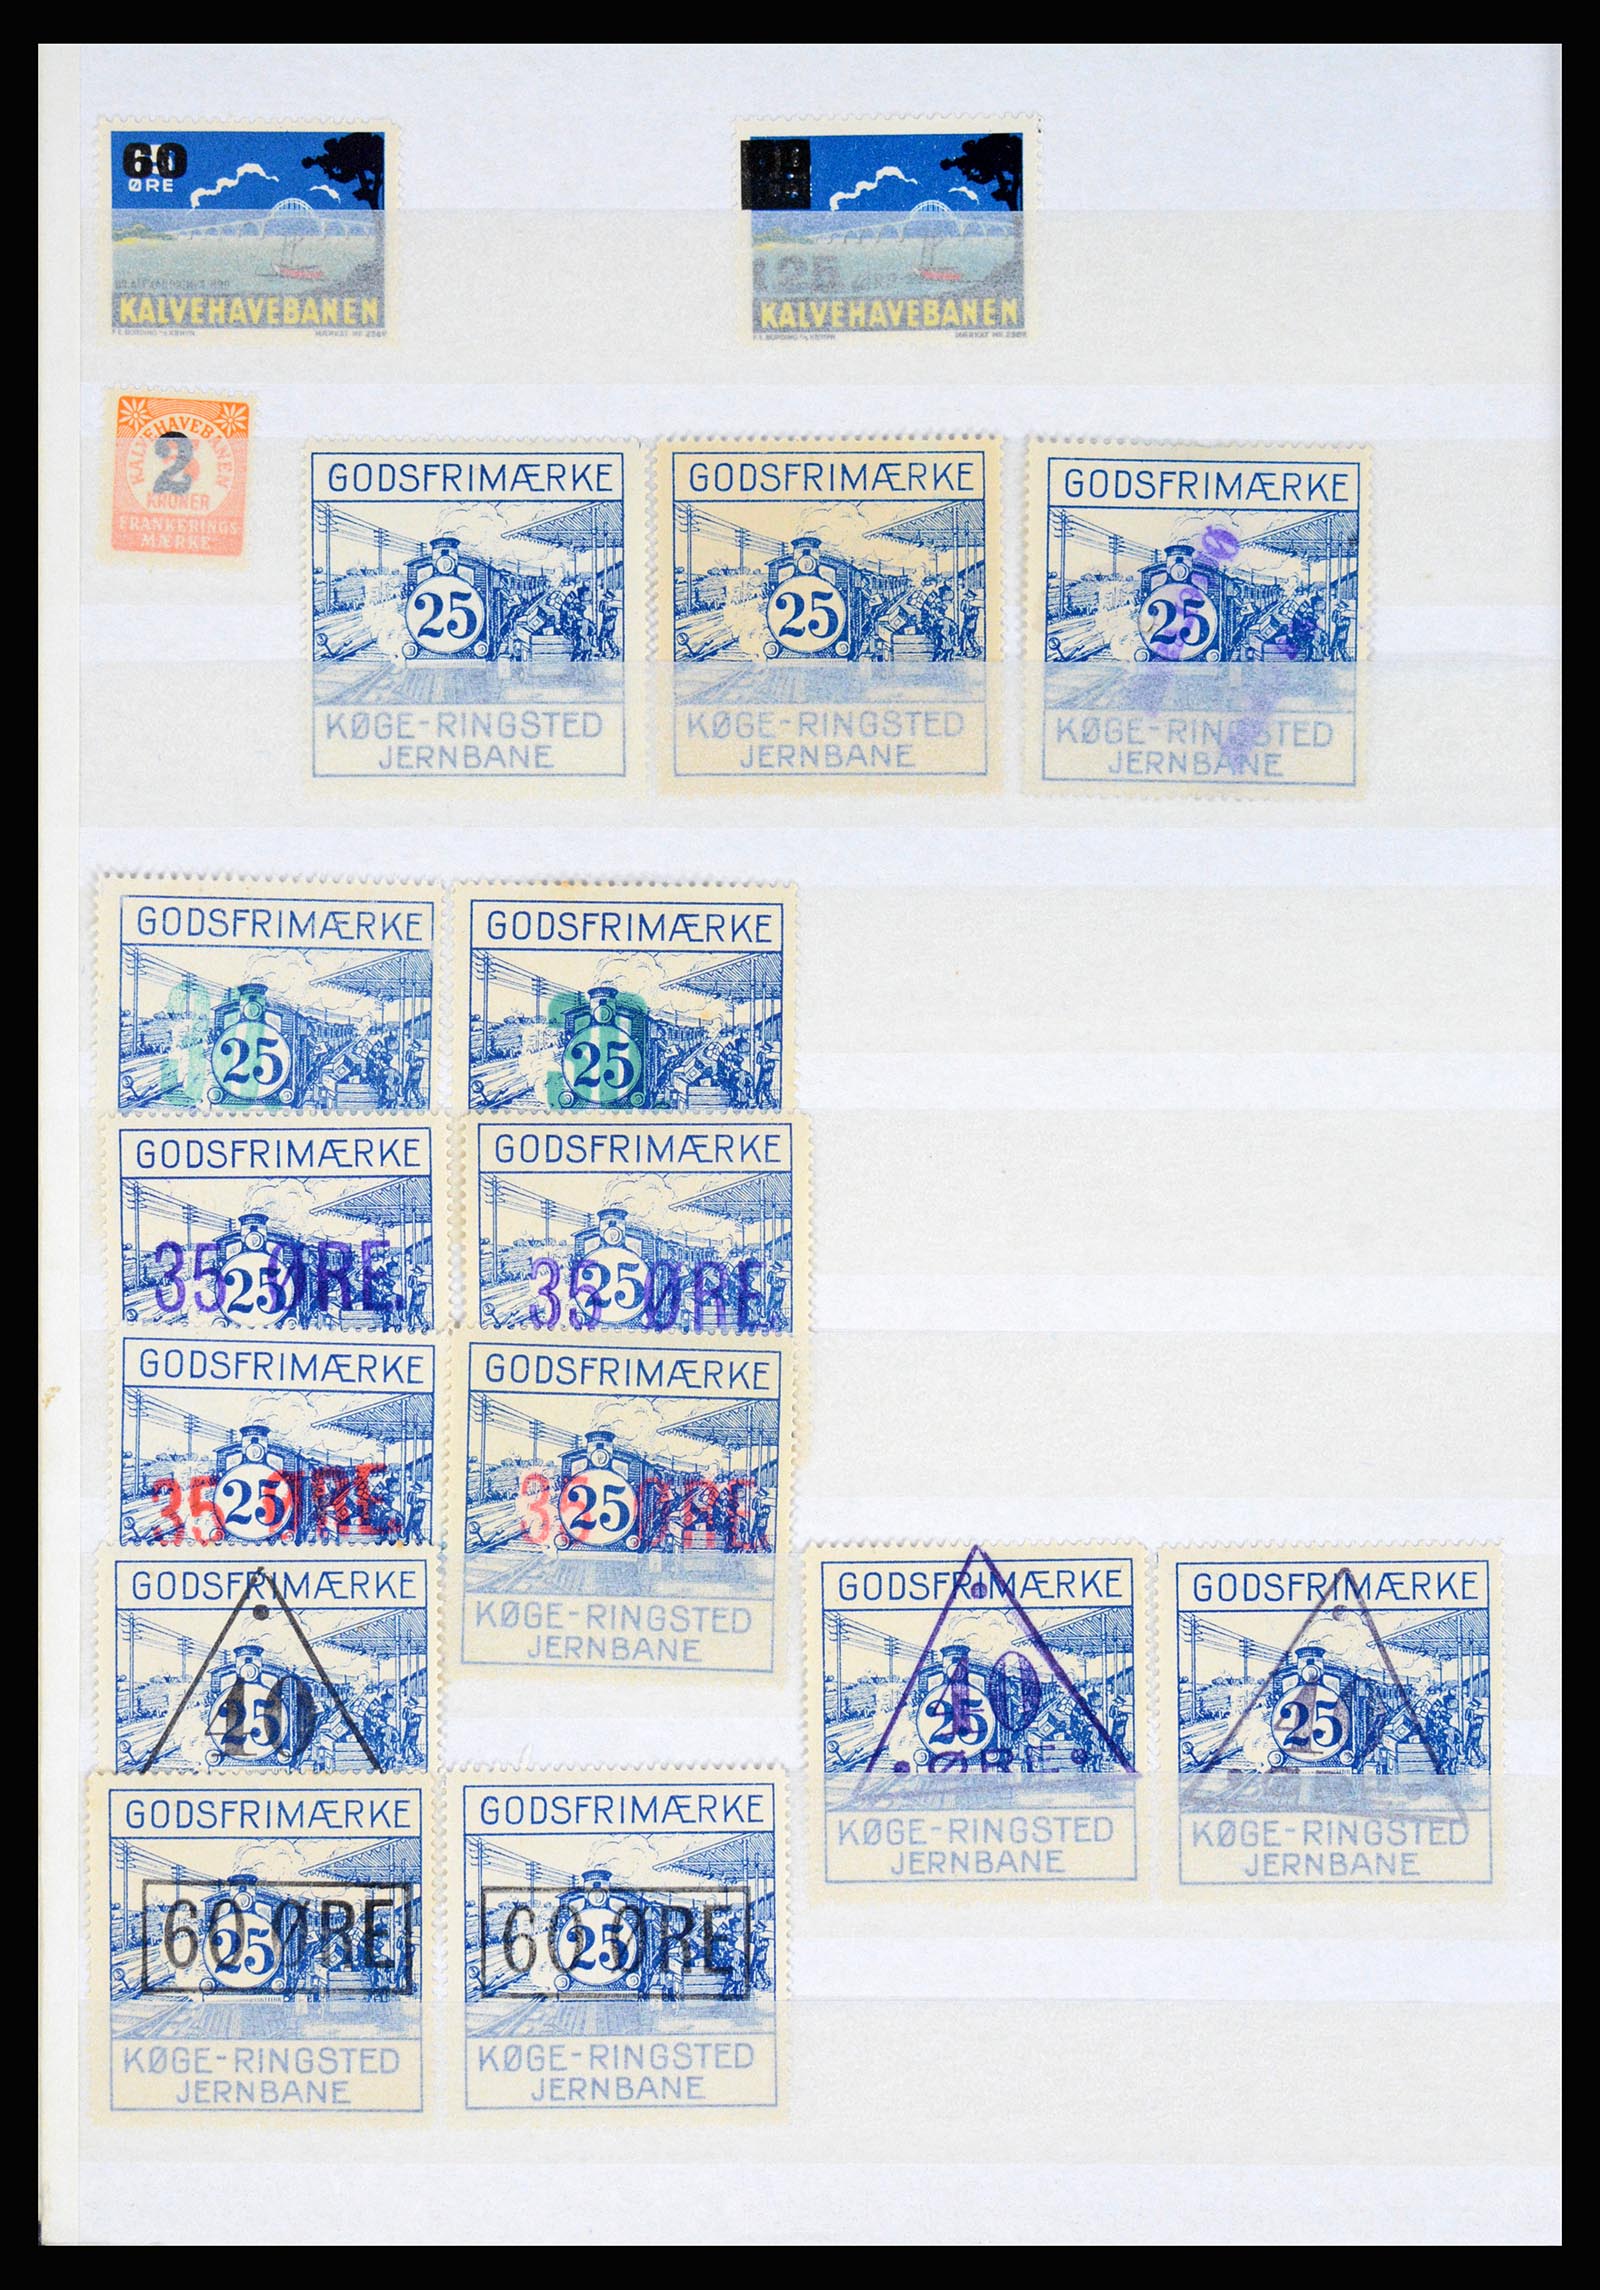 36982 032 - Postzegelverzameling 36982 Denemarken spoorwegzegels.